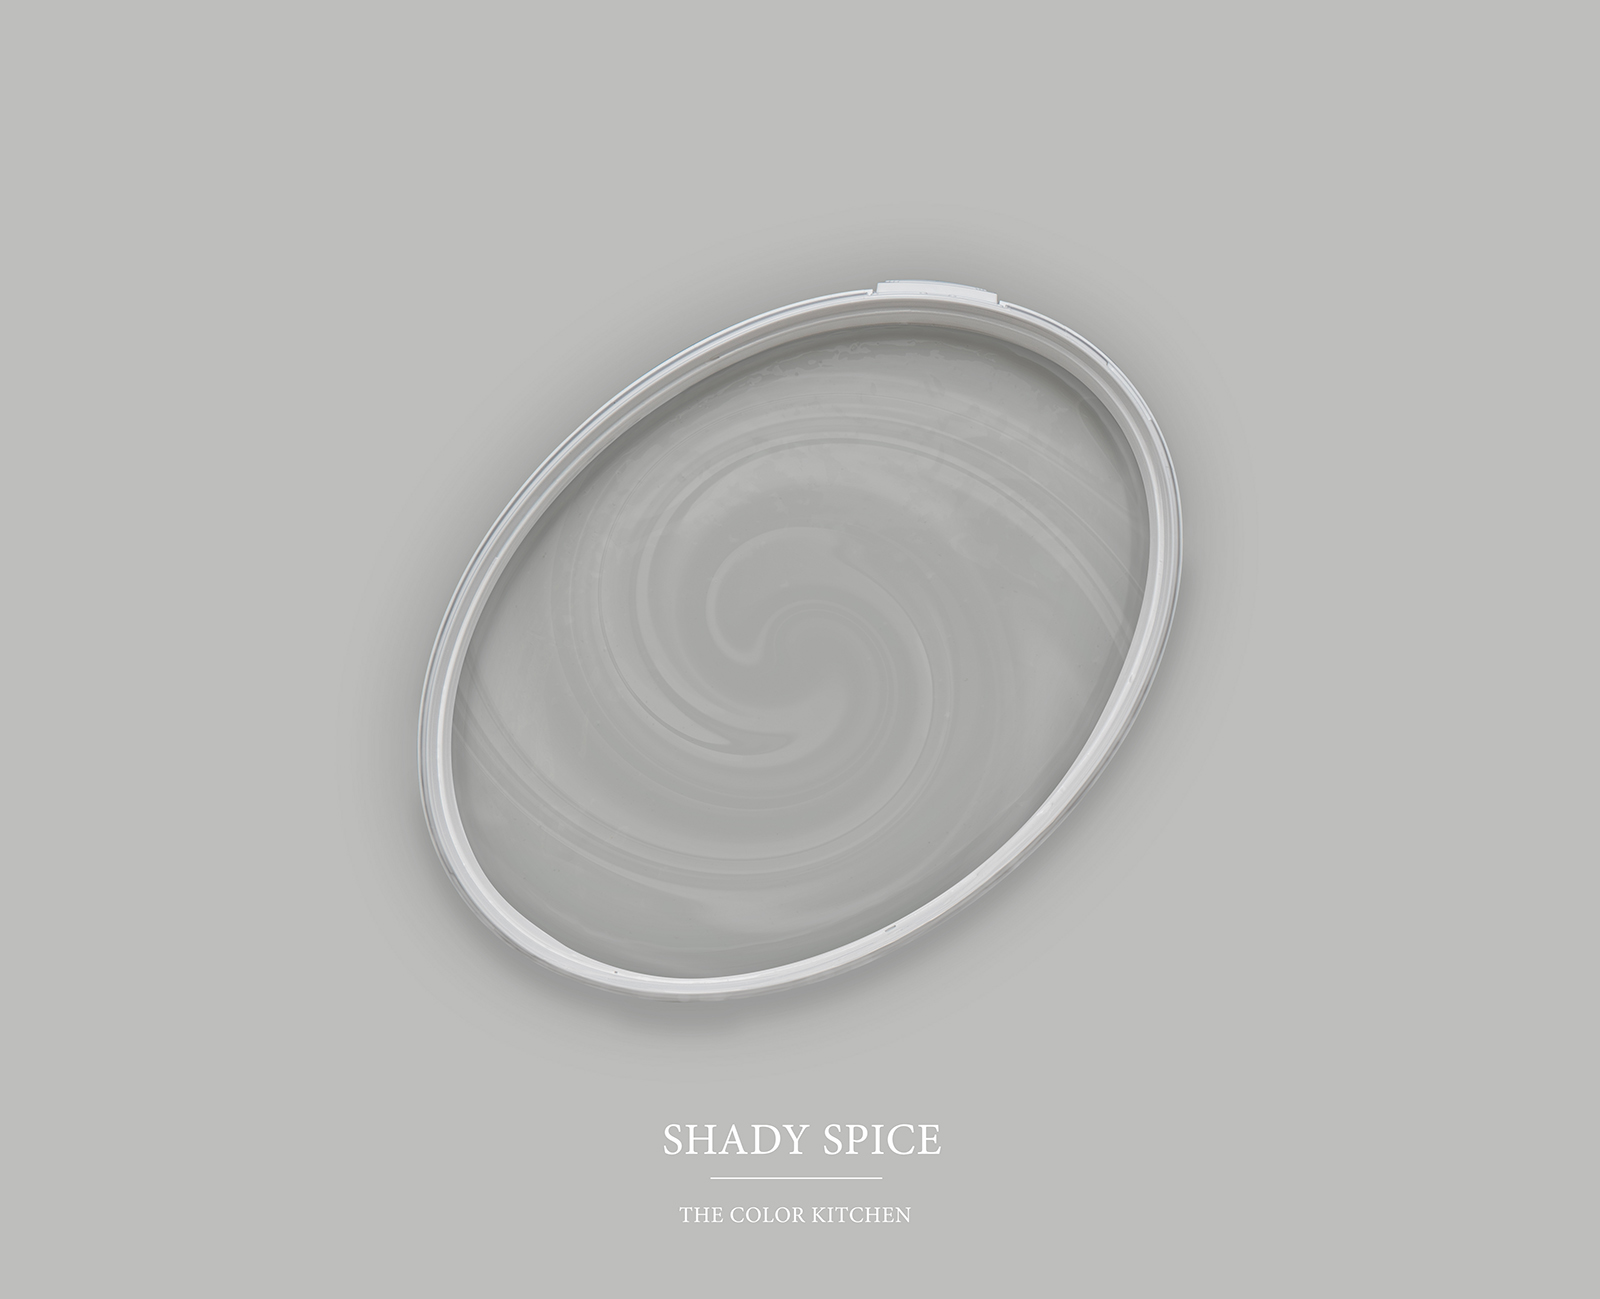         Wandfarbe in kühlem Grau »Shady Spice« TCK1004 – 2,5 Liter
    